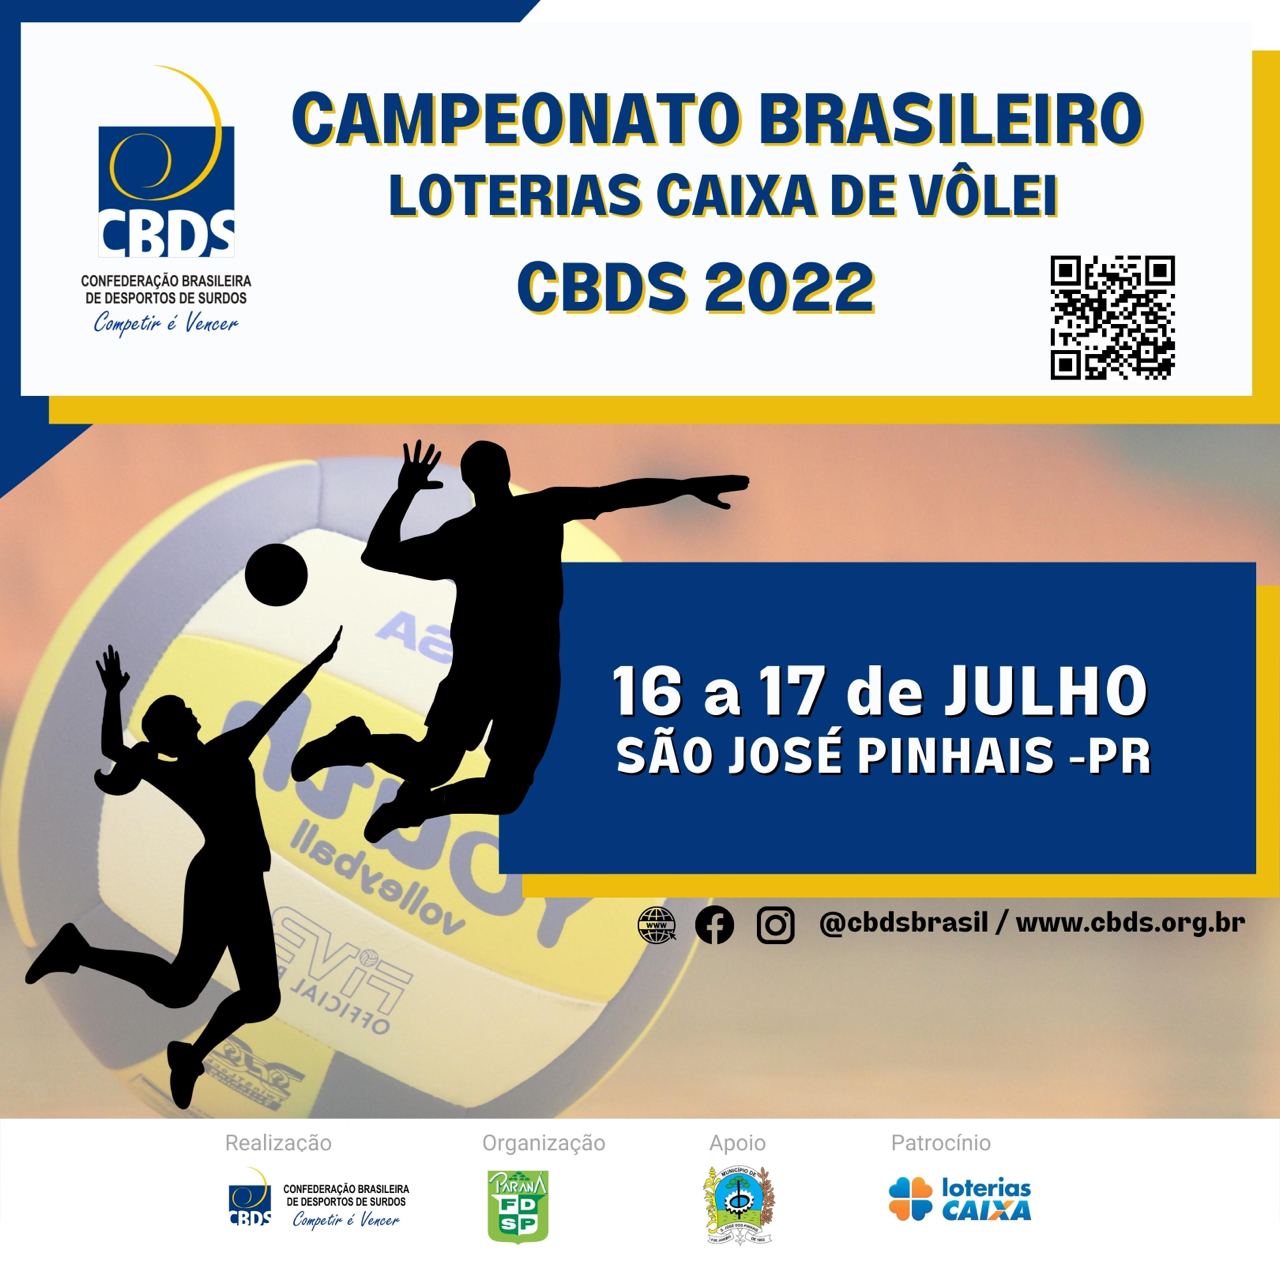 Campeonato Brasileiro Loterias Caixa de Vôlei 2022